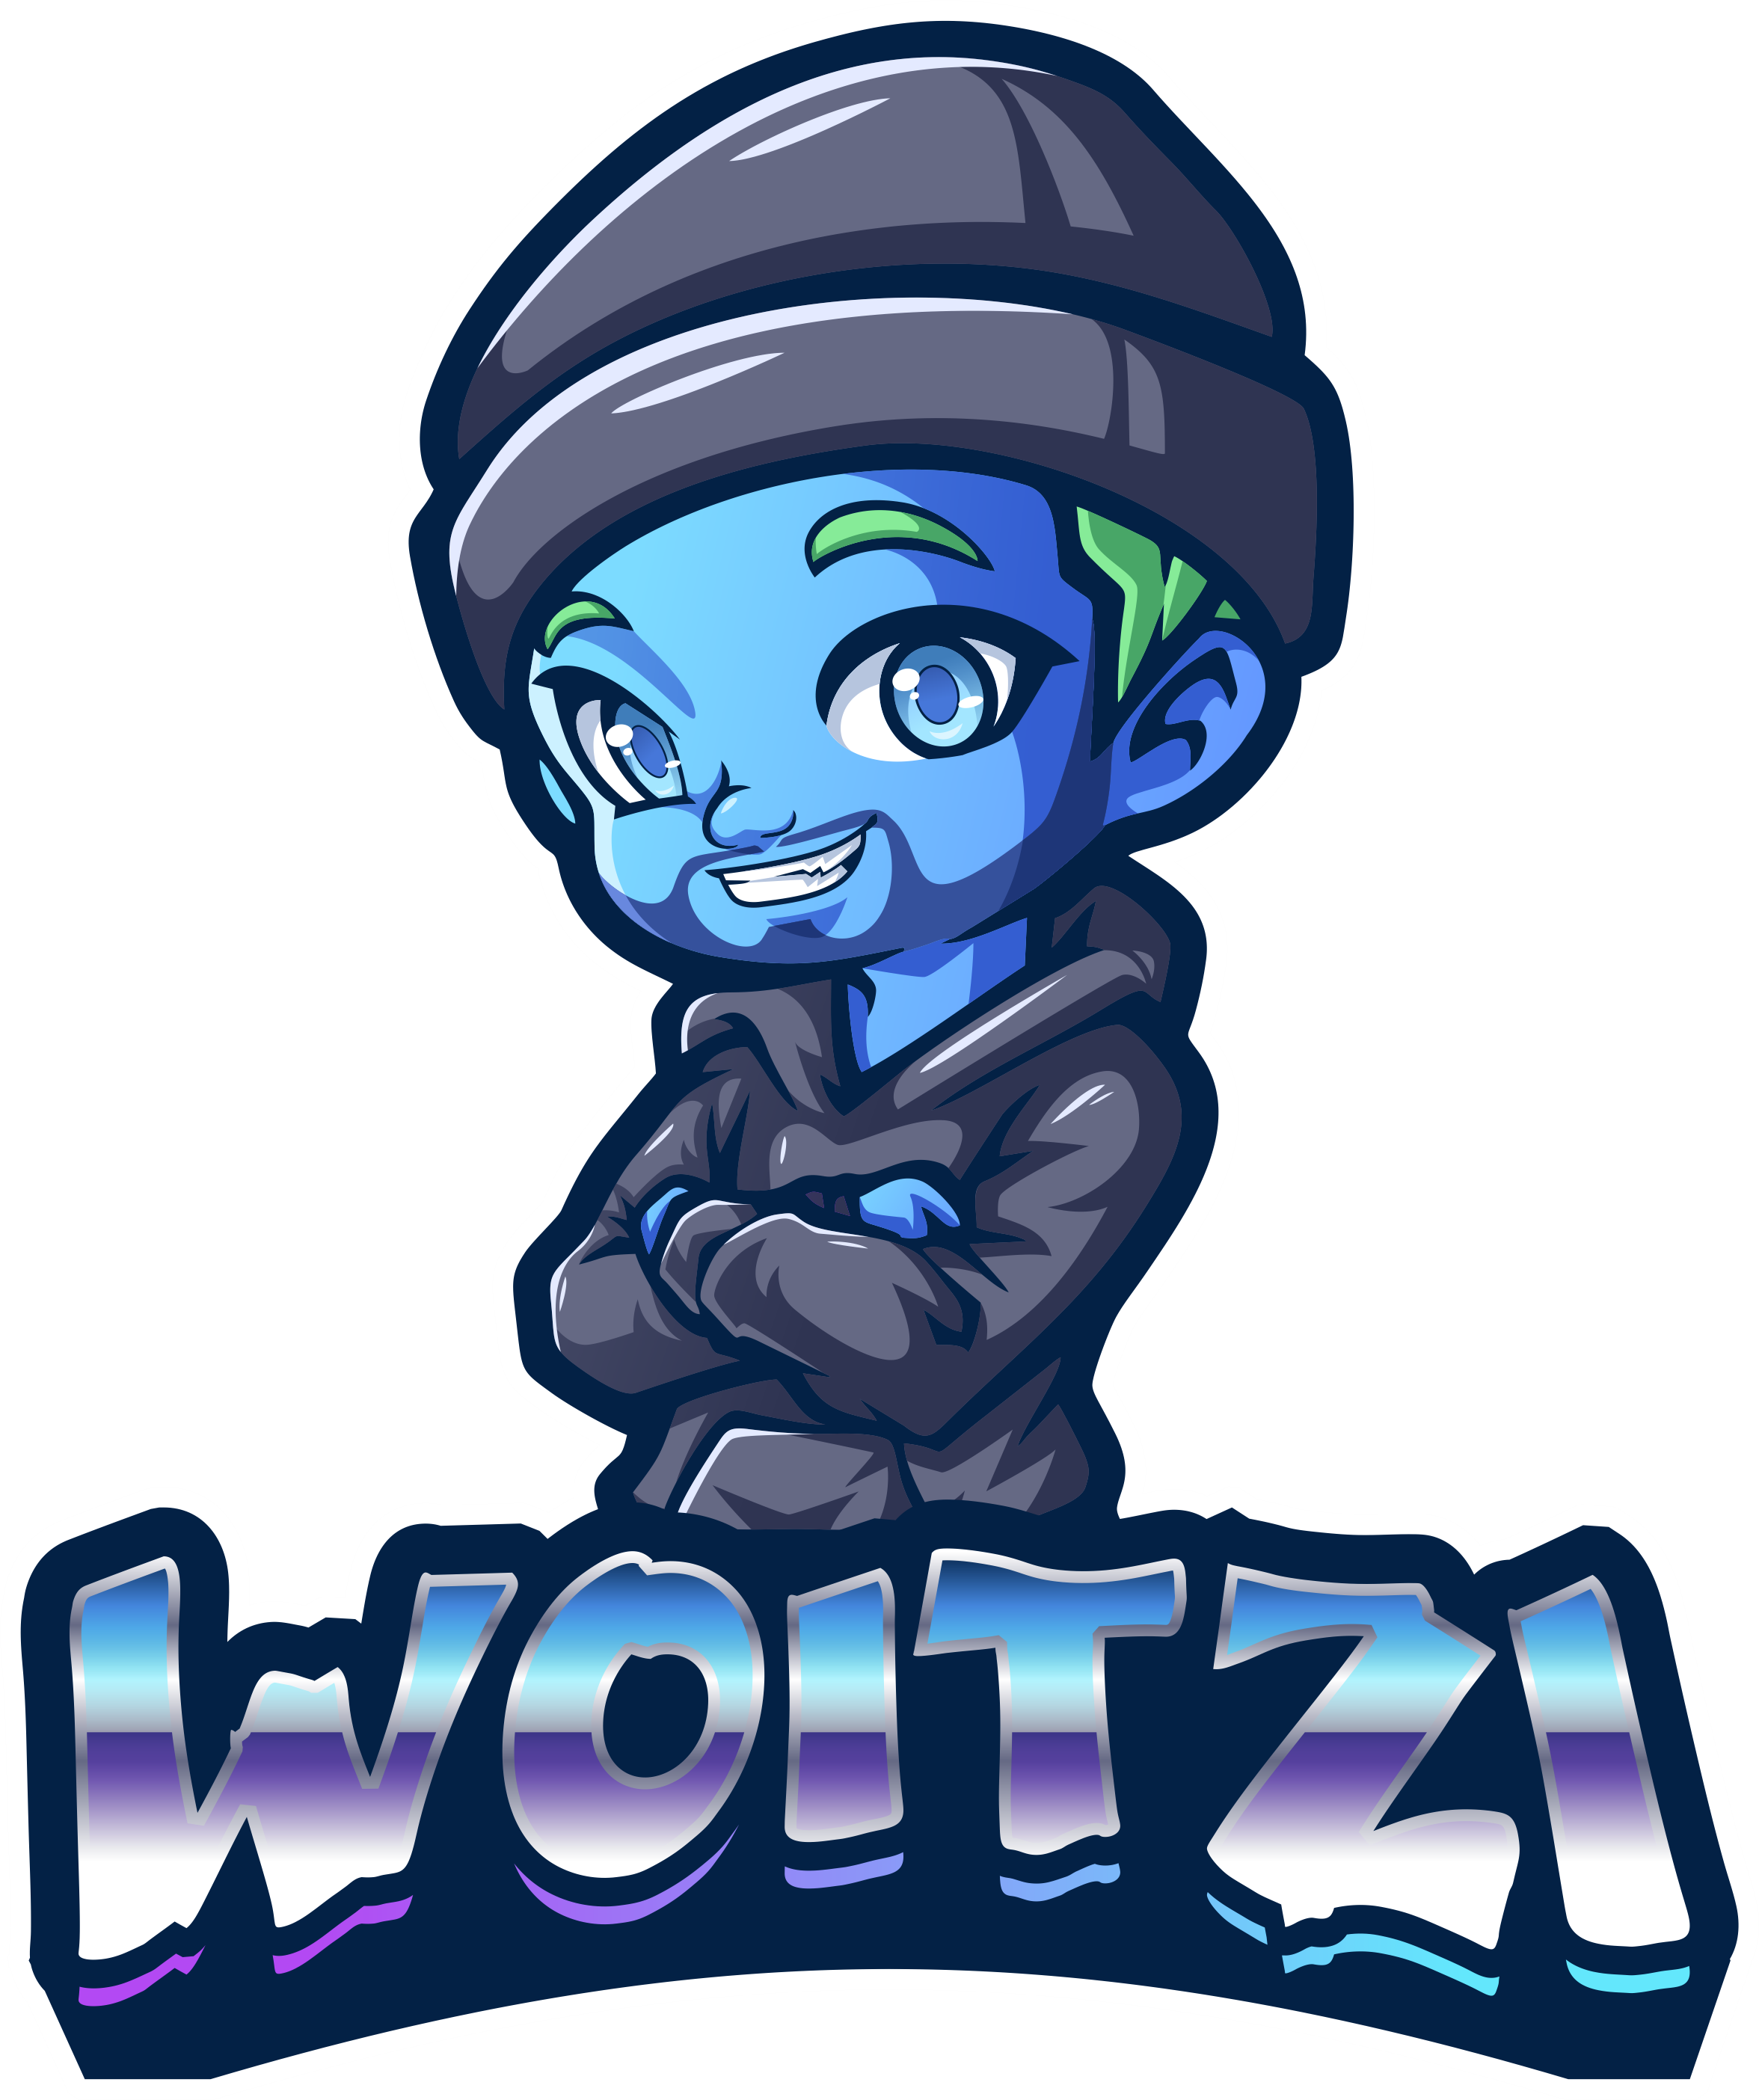 Woitzi Logo